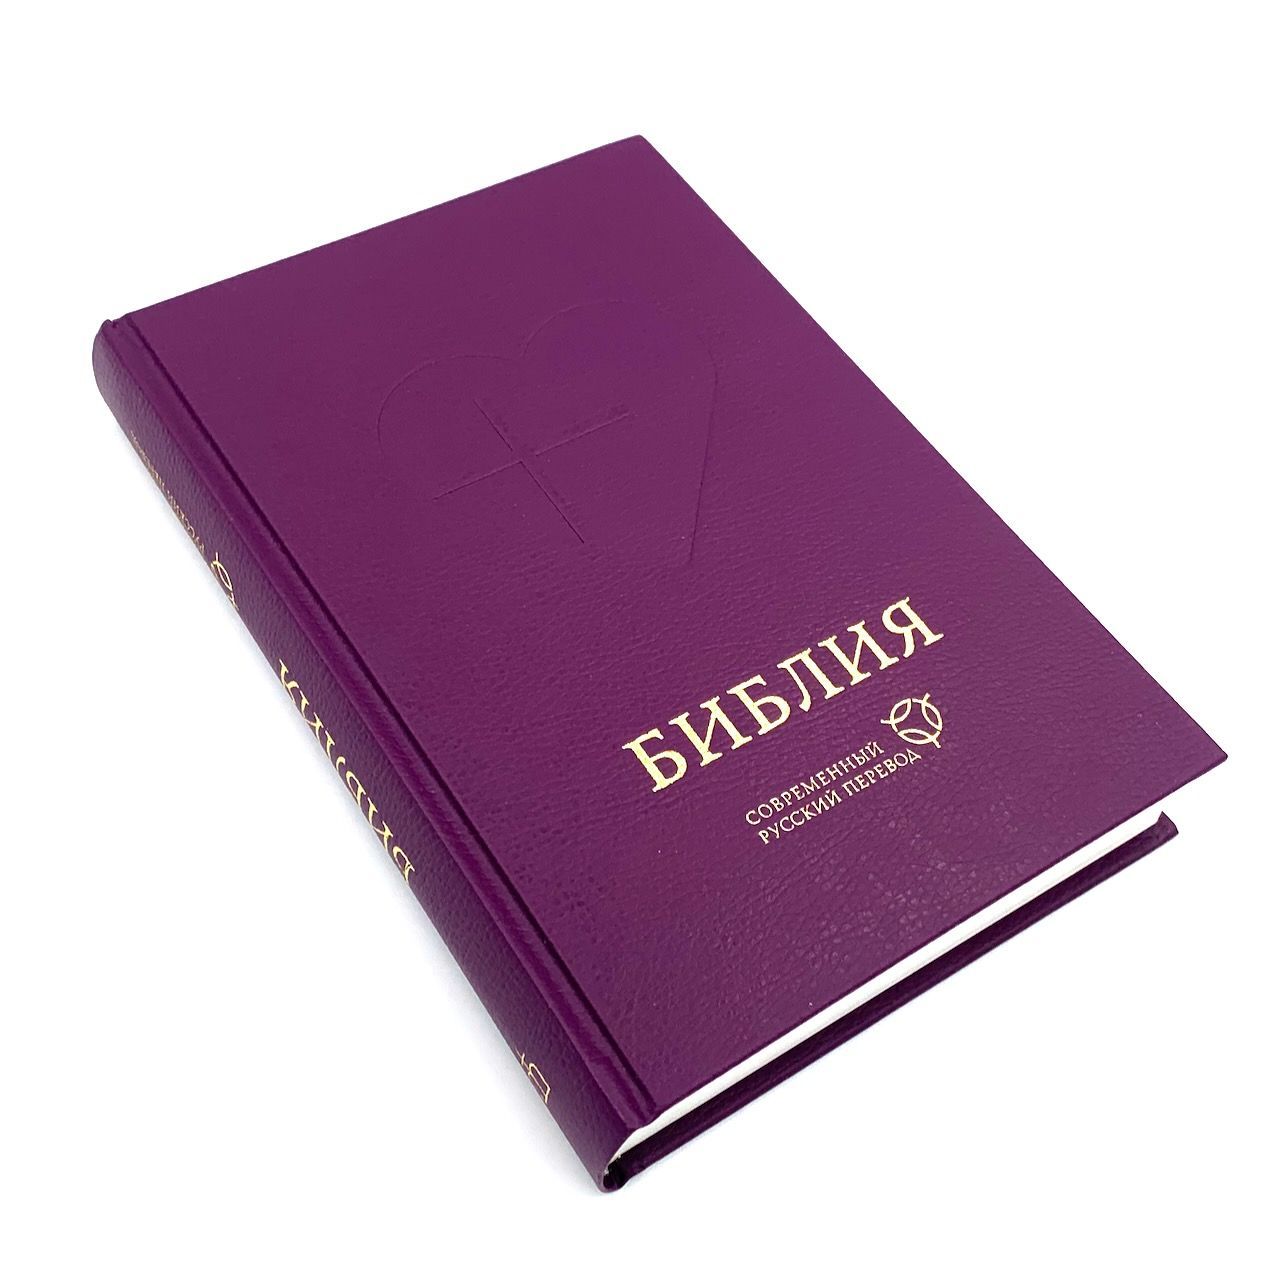 Библия. Современный русский перевод 063, цвет фиолетовый код 1367, твердый переплет с закладкой, 3-издание